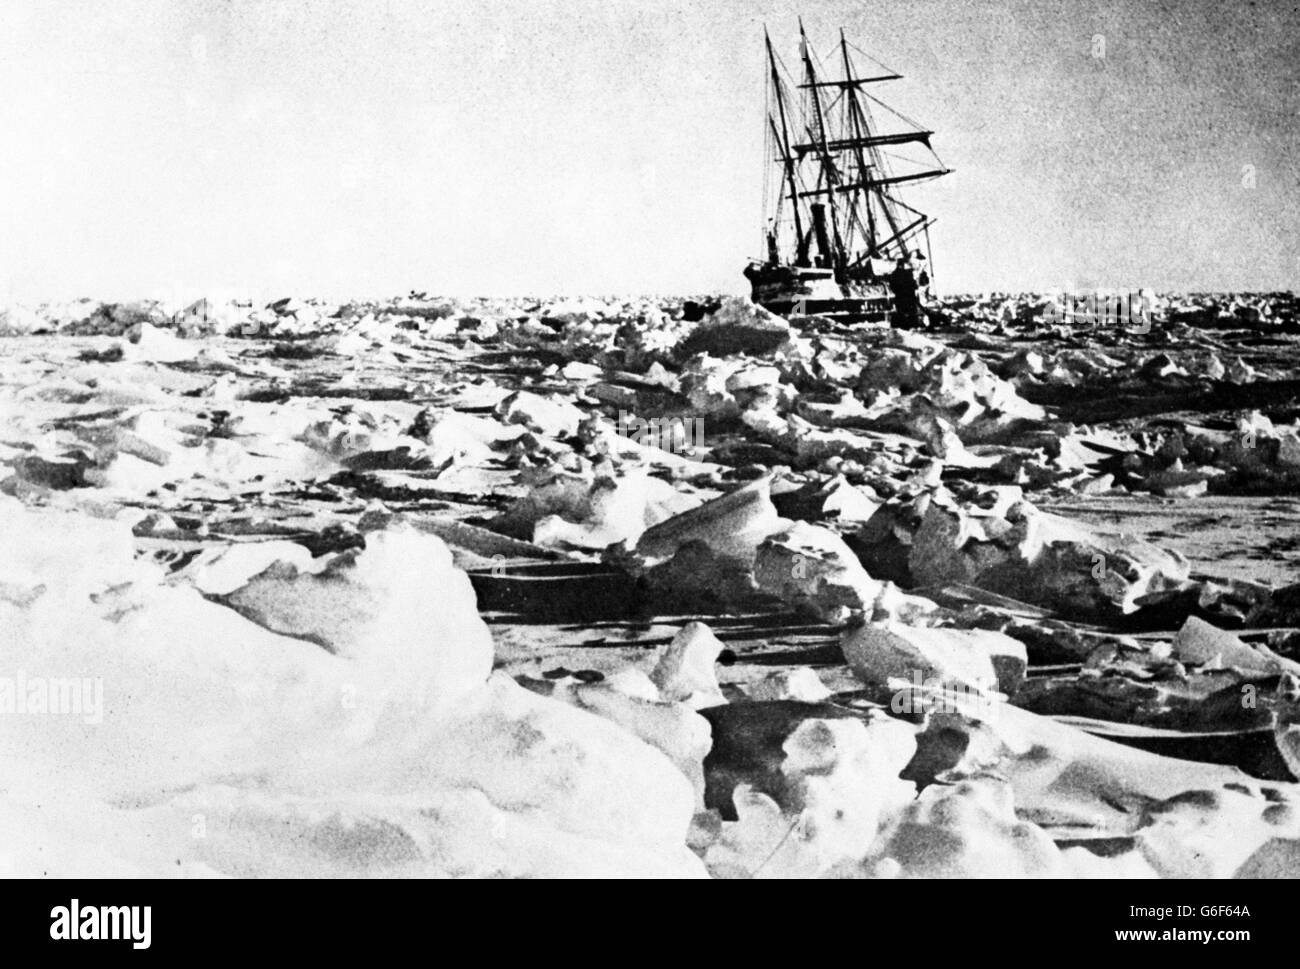 Shackleton Expedition - Ausdauer - Antarktis. Ernest Shackletons Schiff Endurance während einer Expedition in die Antarktis im Eis gefangen. Genaues Datum unbekannt. Stockfoto